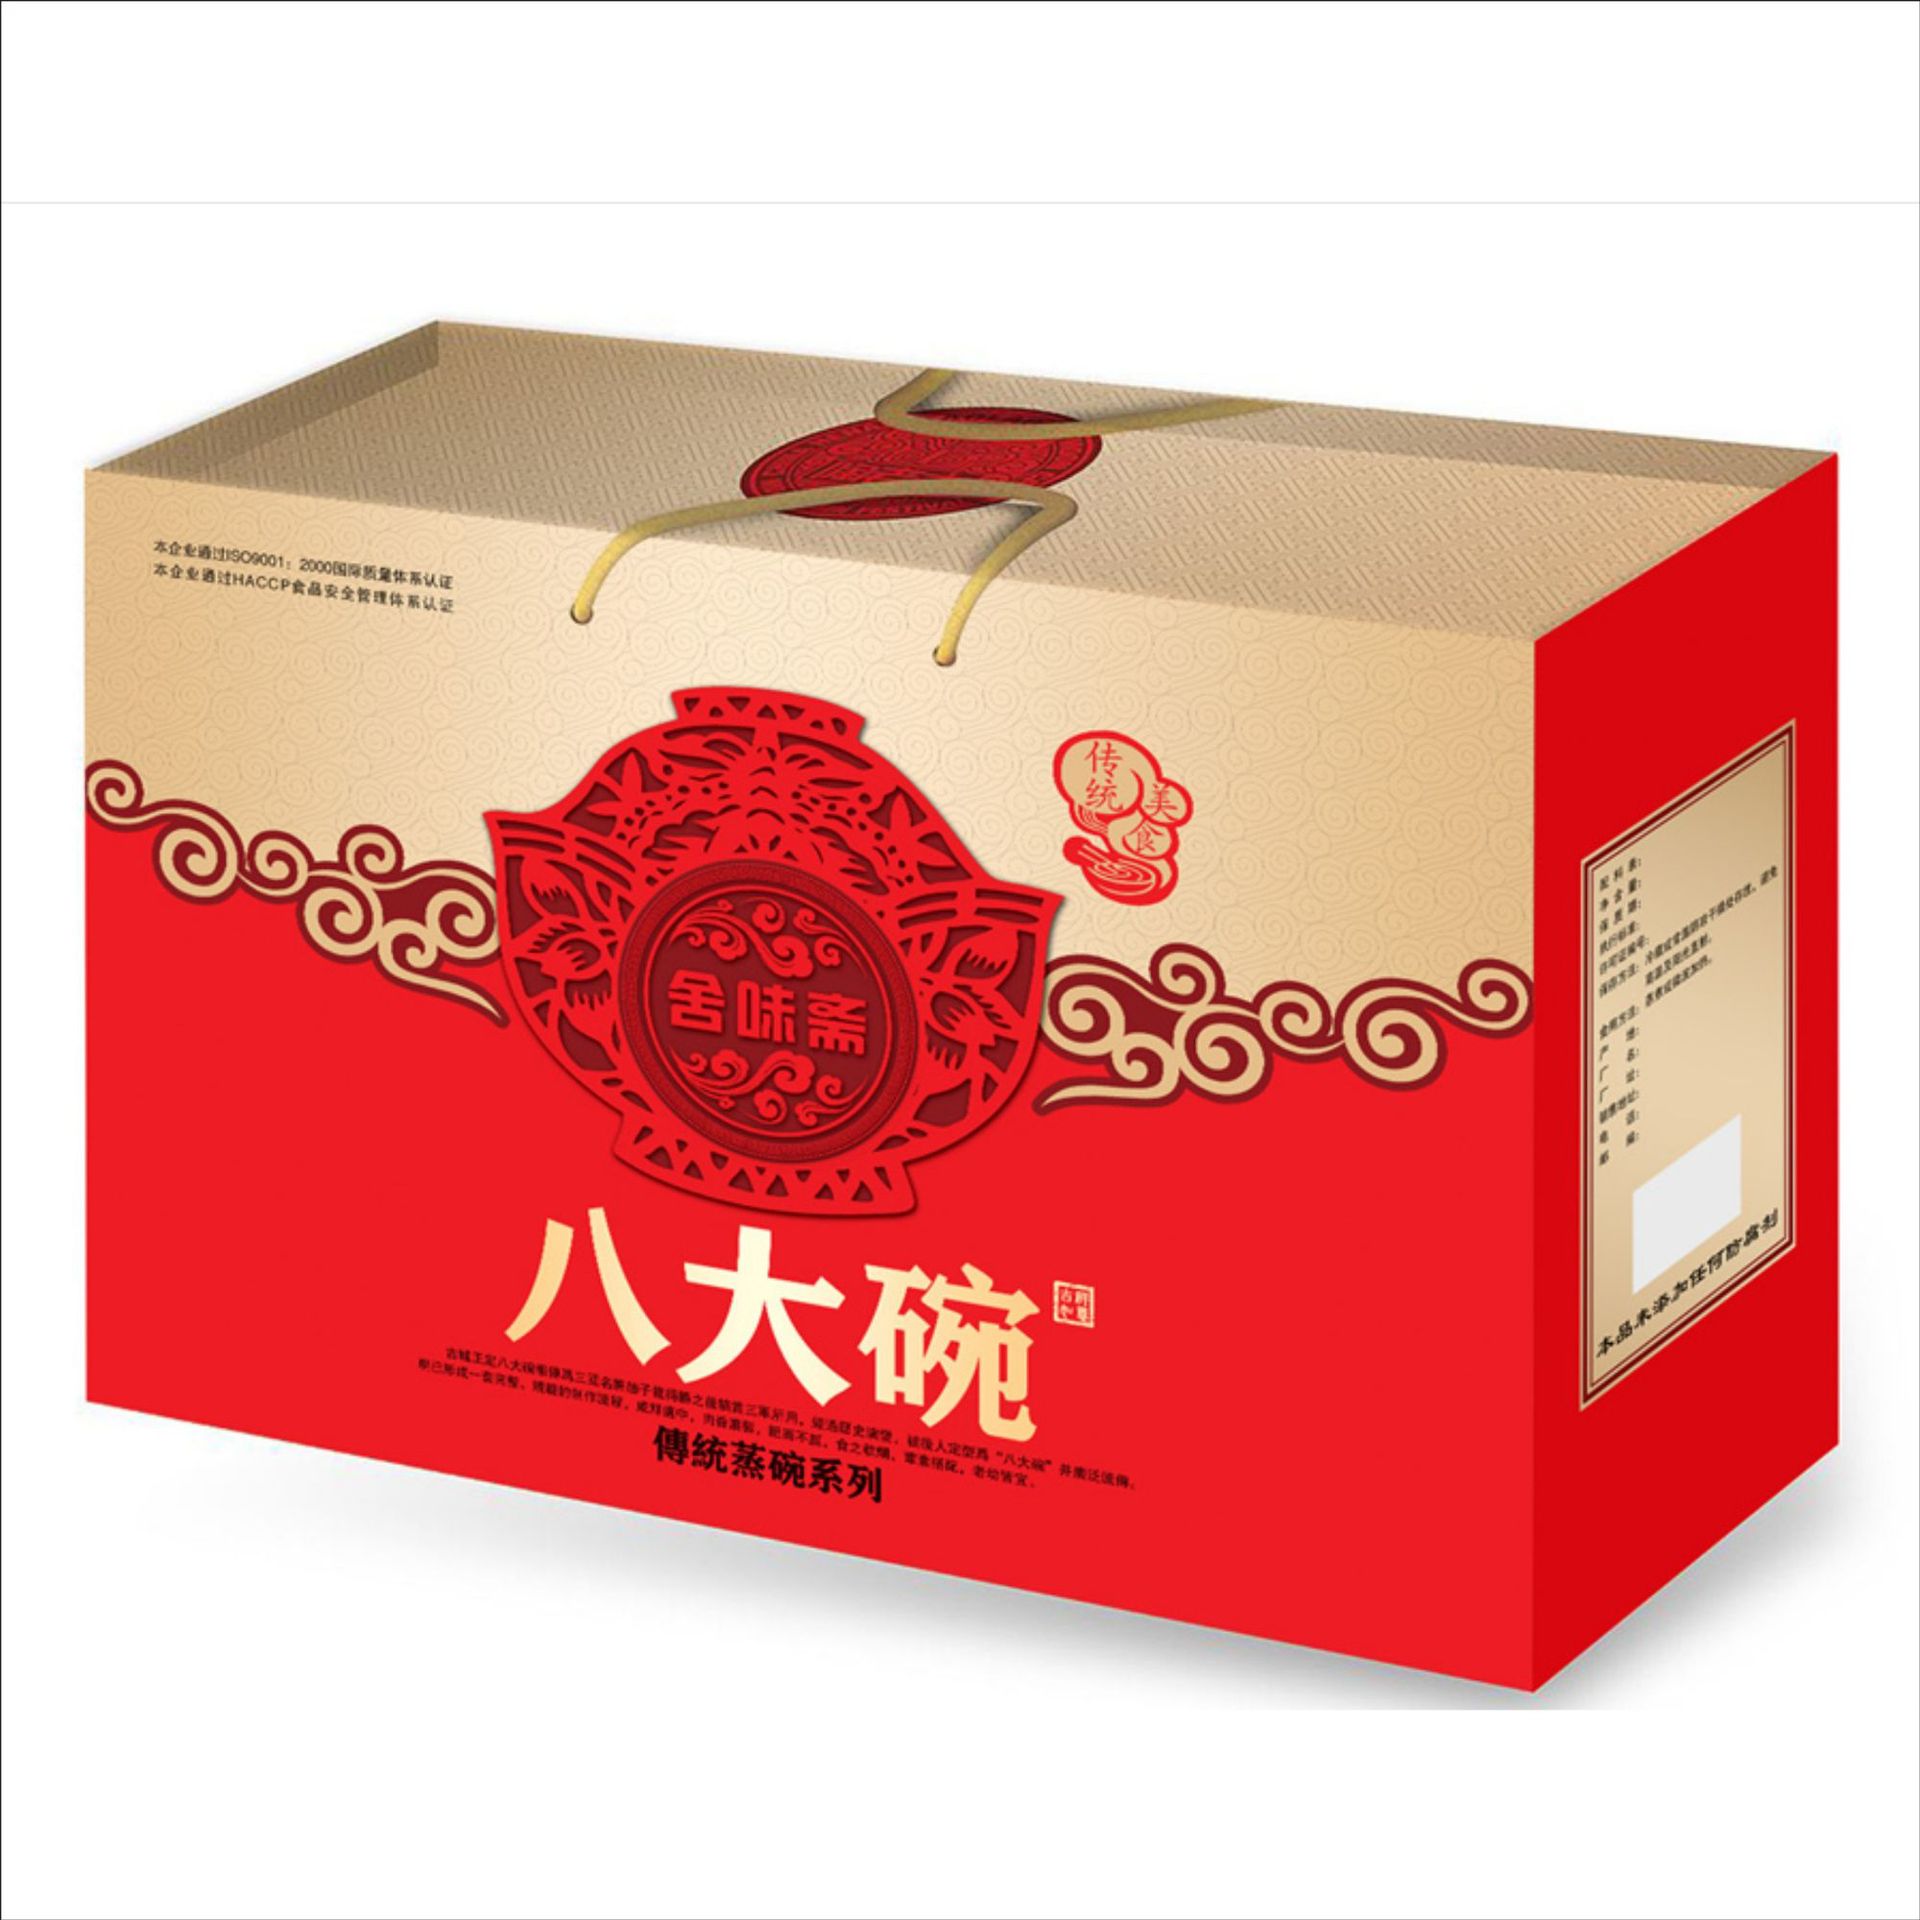 蒸碗礼盒 瓦楞彩箱 食品包装 特产礼盒定做 扣肉八大碗礼品包装盒2